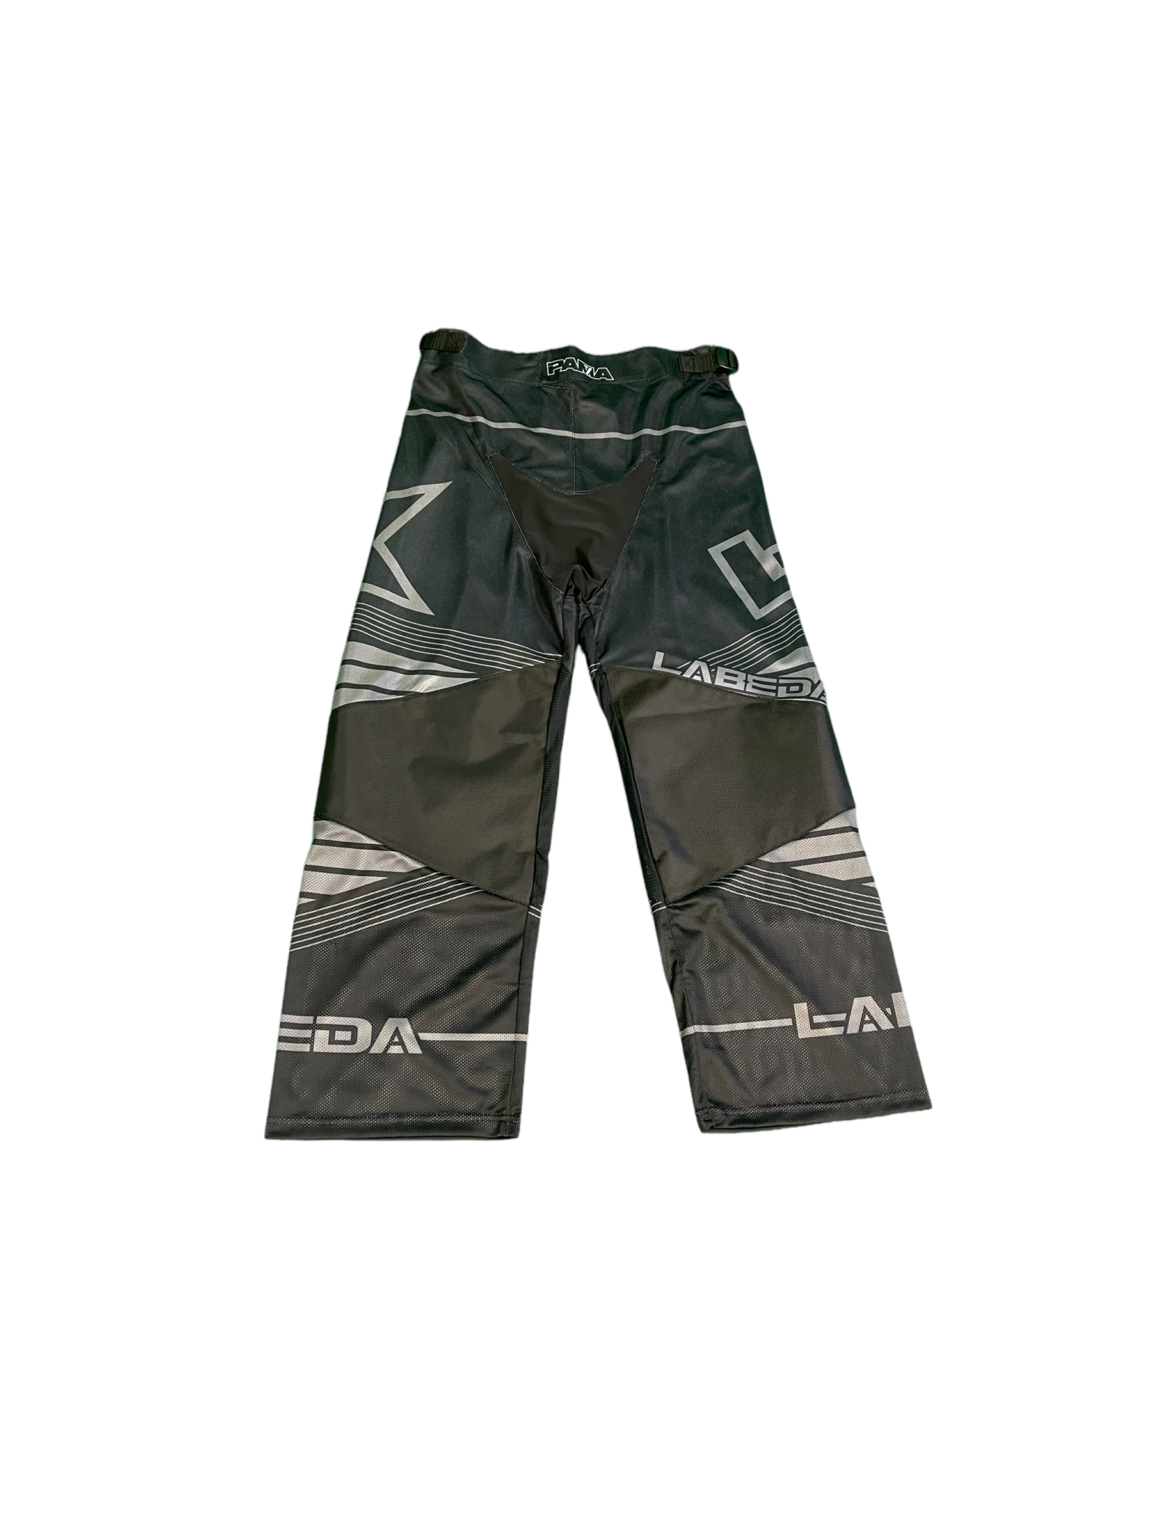 Labeda Hockey Pant Pama 7.2 JR - Black/Charcoal/Angle